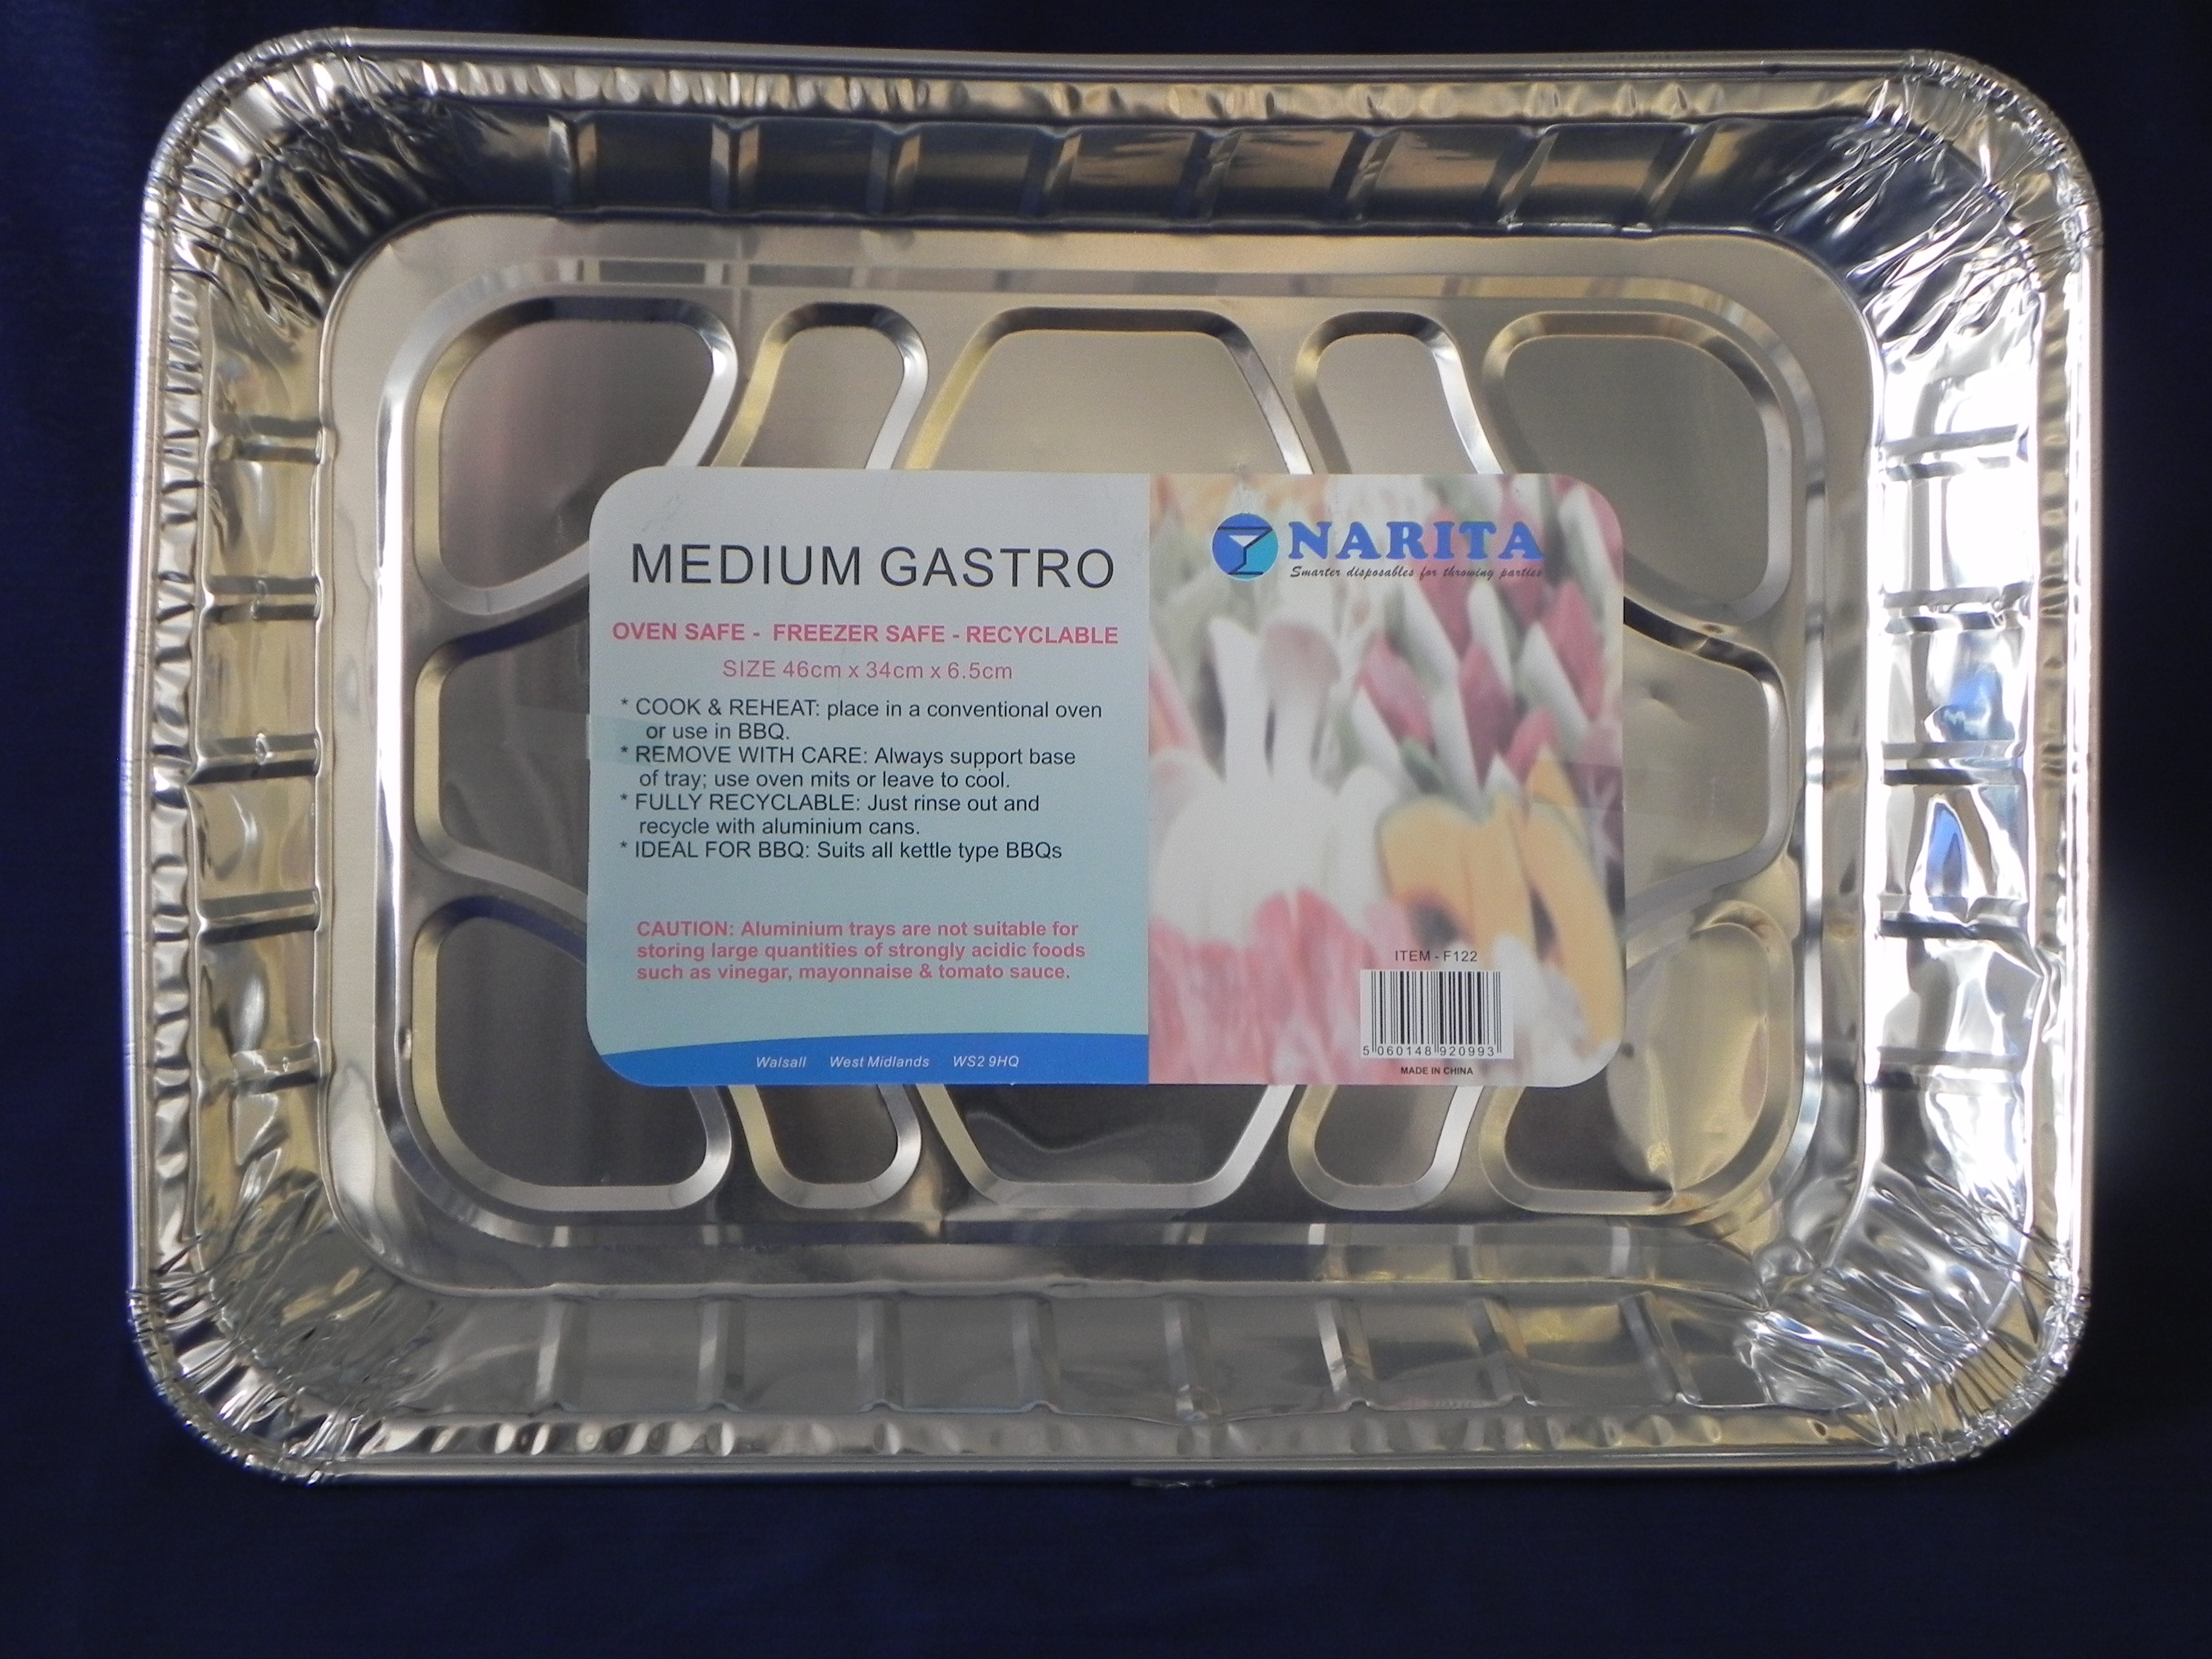 Medium Gastro